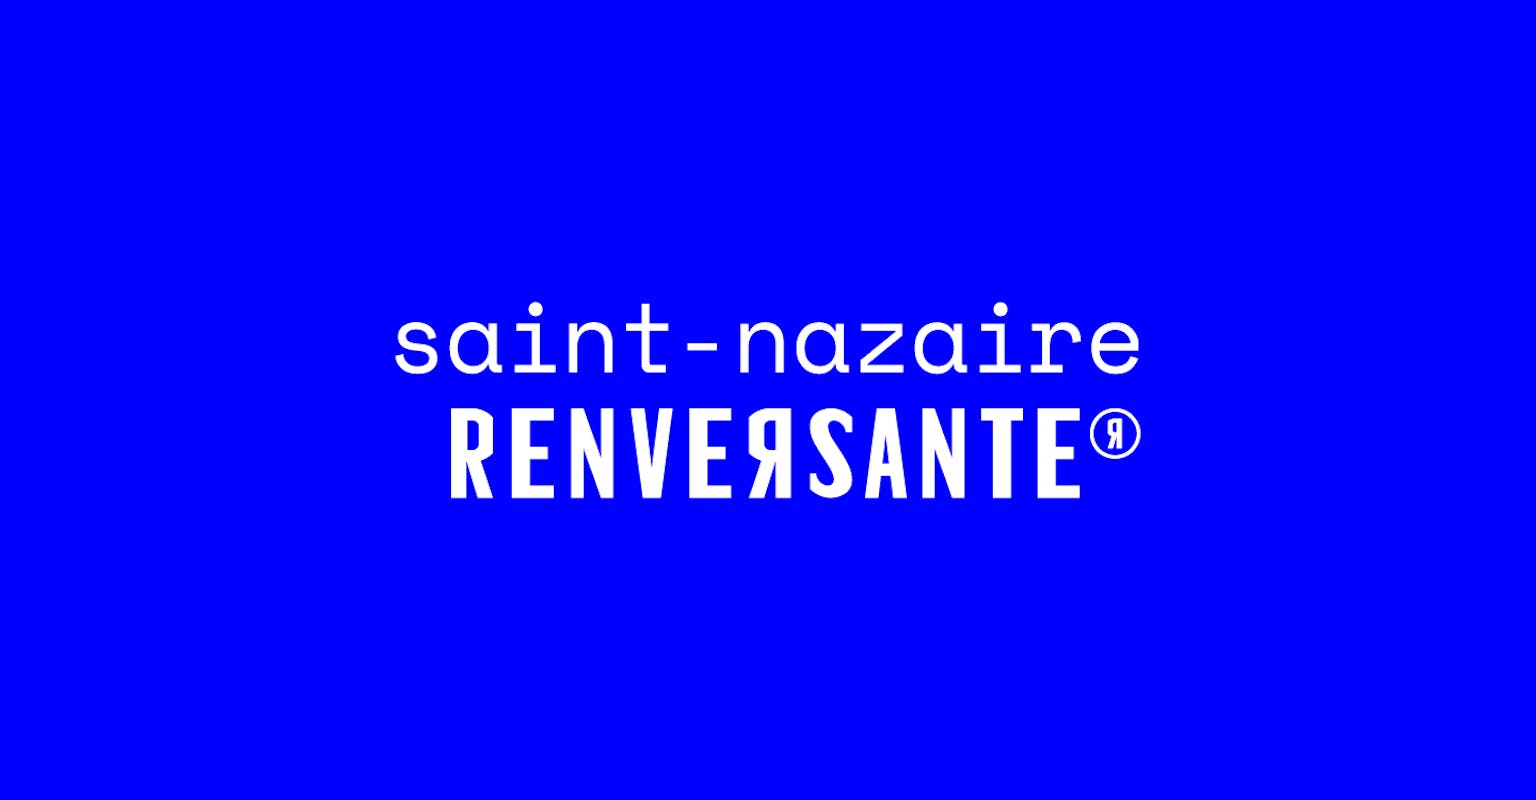 Nouveau logo de Saitn-Nazaire Renversante, conçu par le Studio Katra.